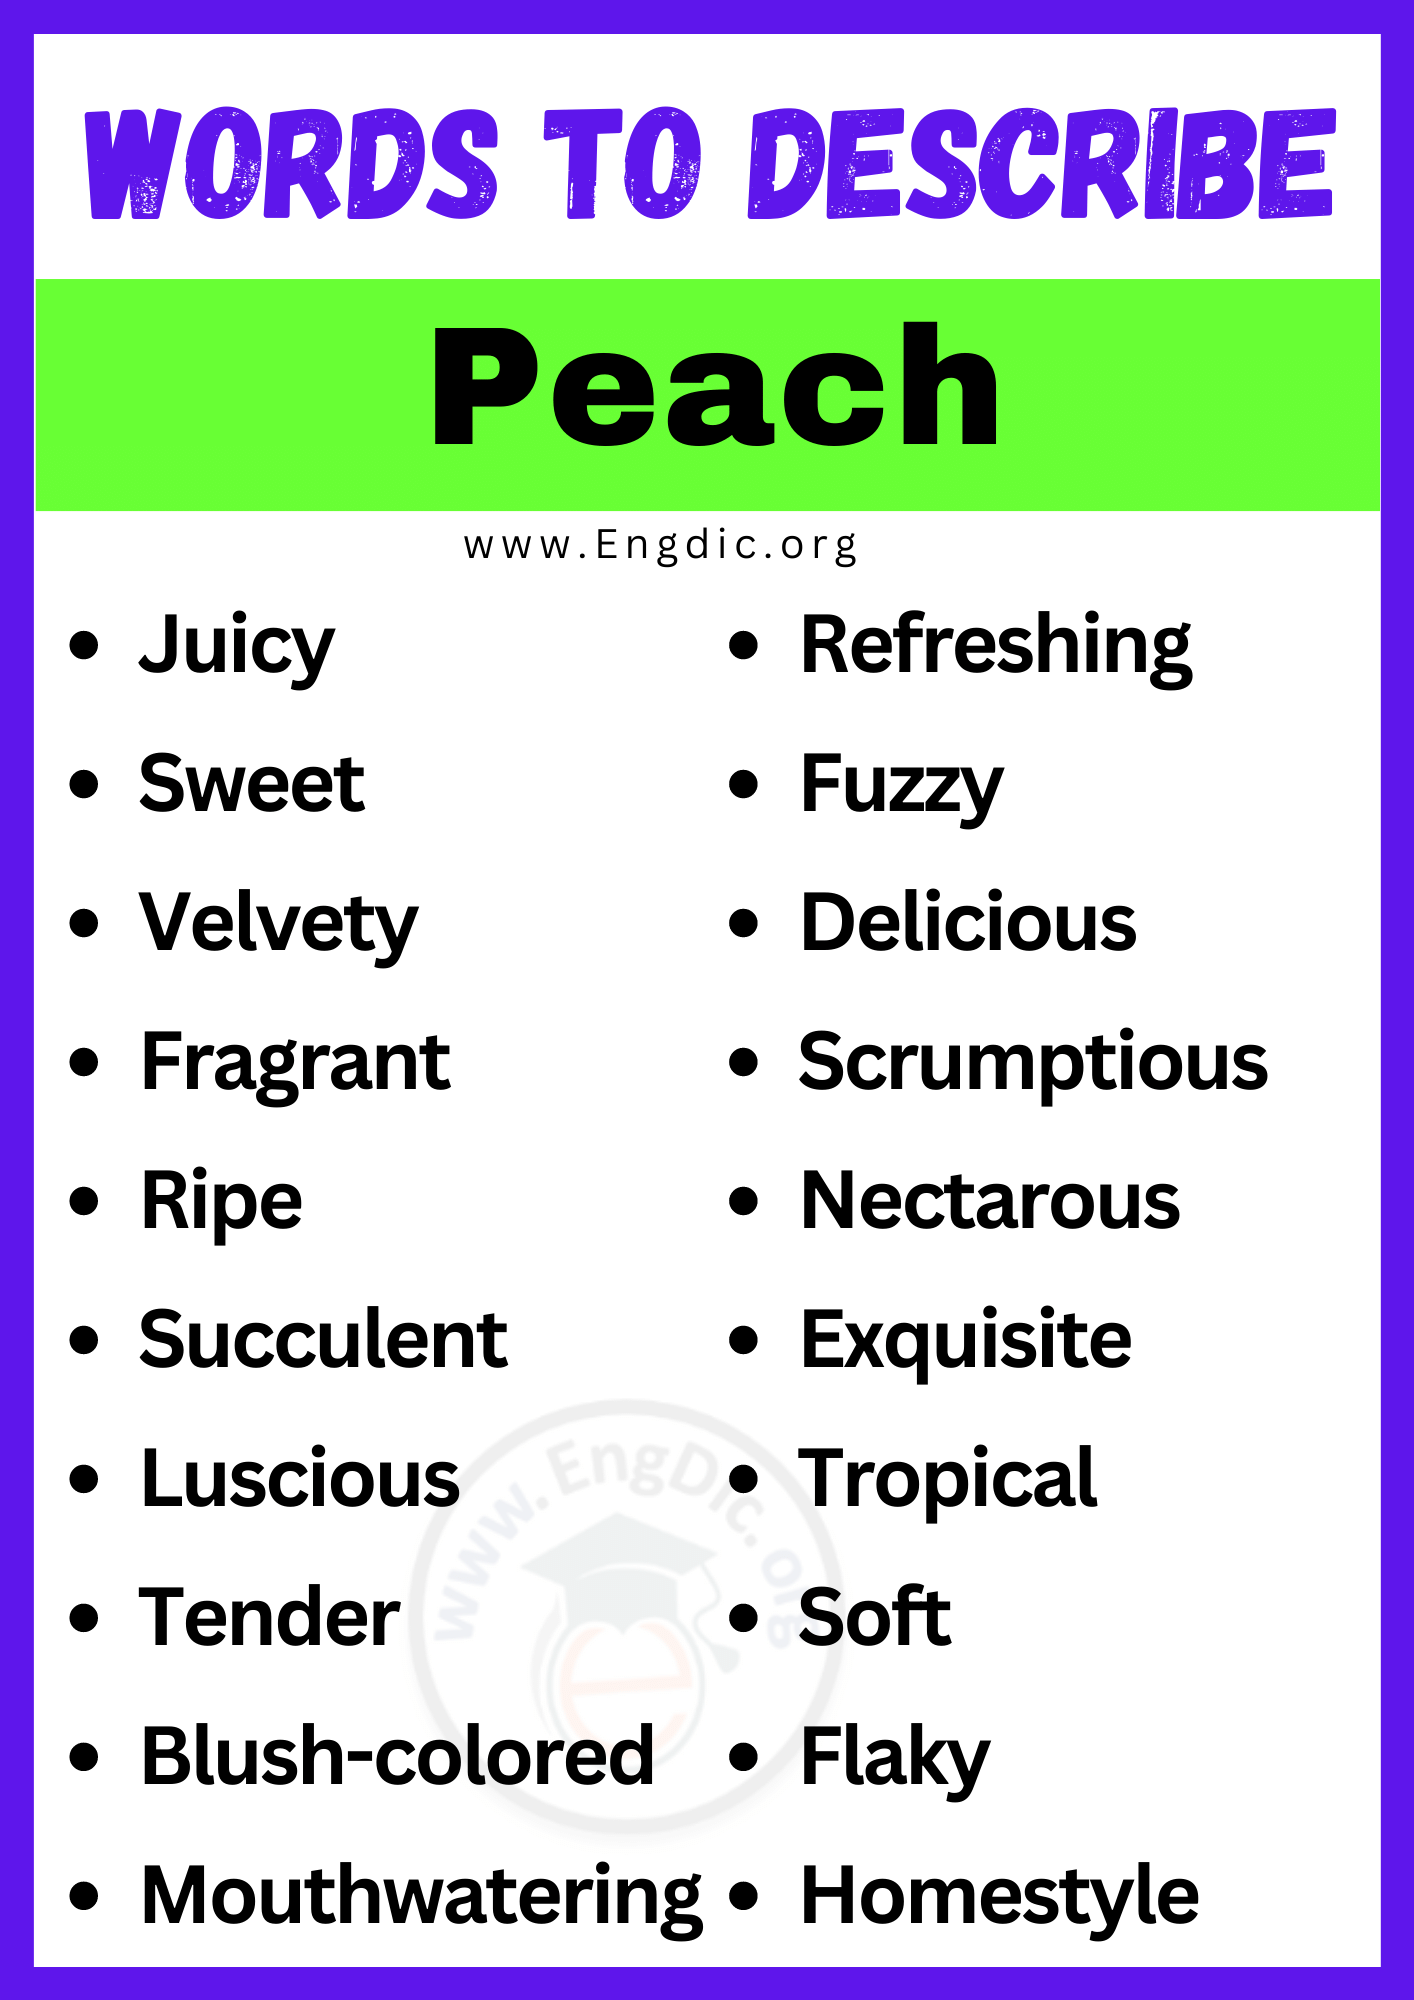 Words to Describe Peach